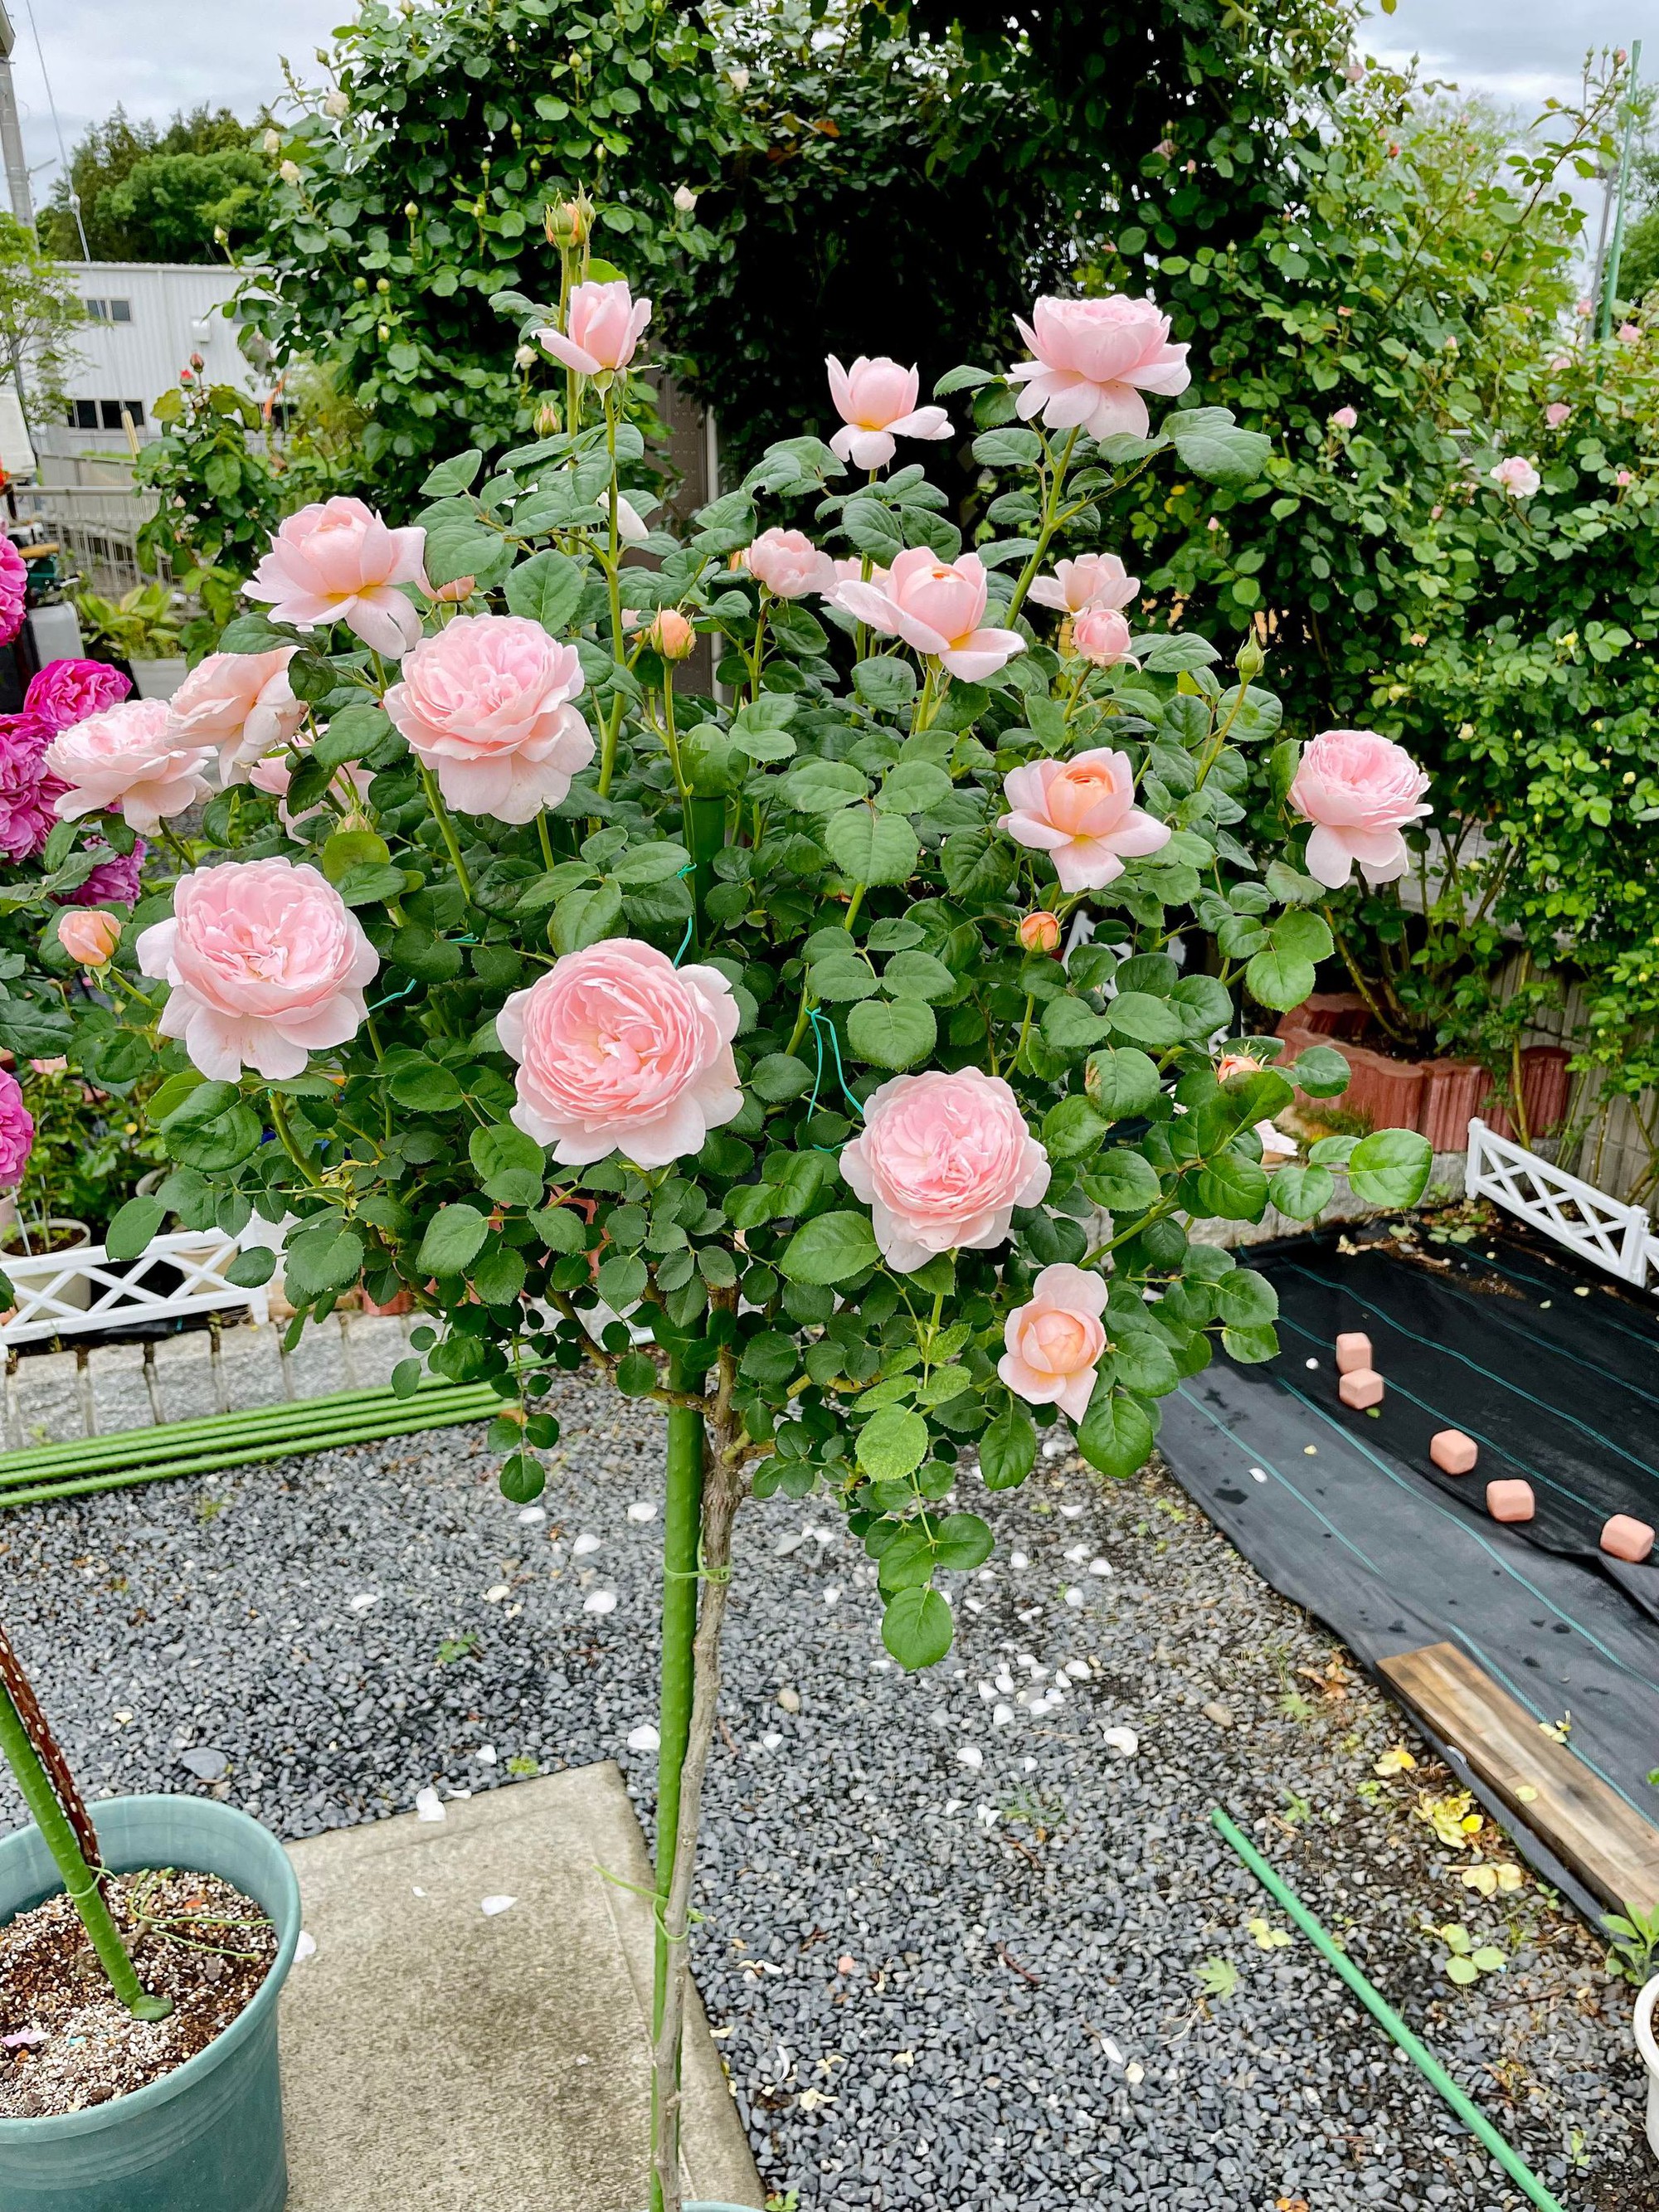 Ngôi nhà lúc nào cũng thơm nức mùi hoa vì có vườn hồng hơn 80 loại của mẹ Việt ở Nhật- Ảnh 17.